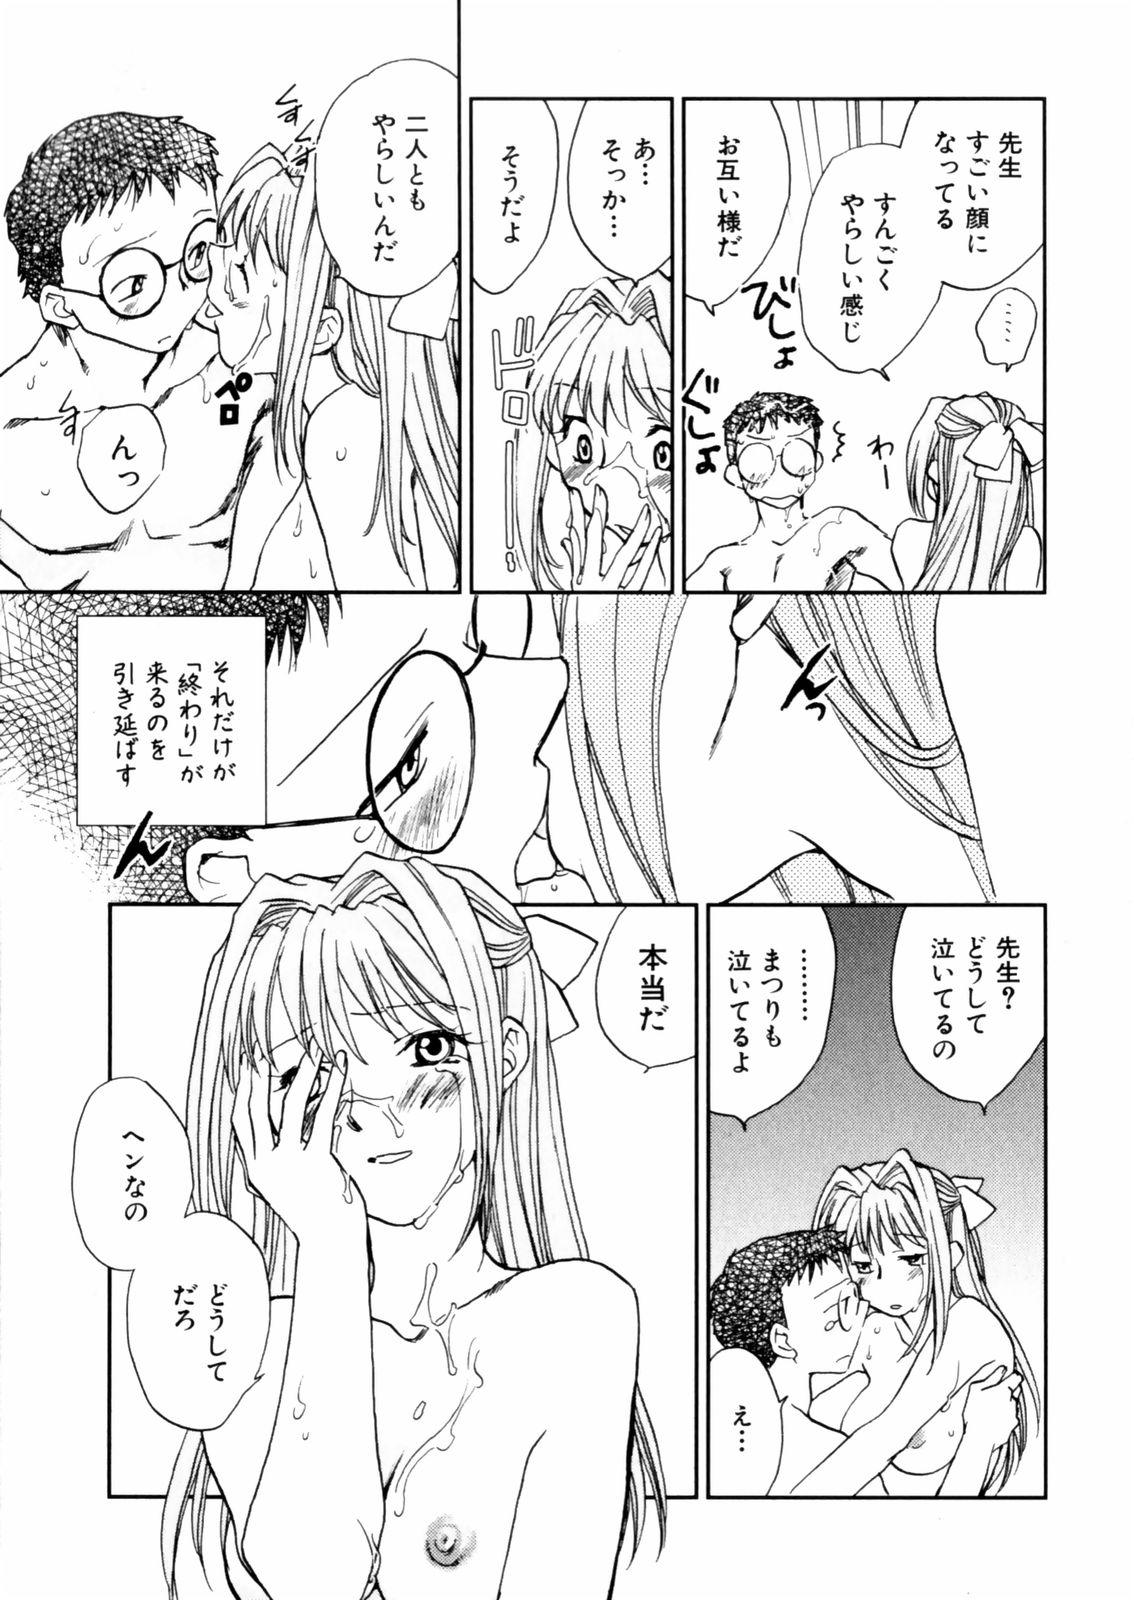 [Okano Ahiru] Hanasake ! Otome Juku (Otome Private Tutoring School) Vol.2 120